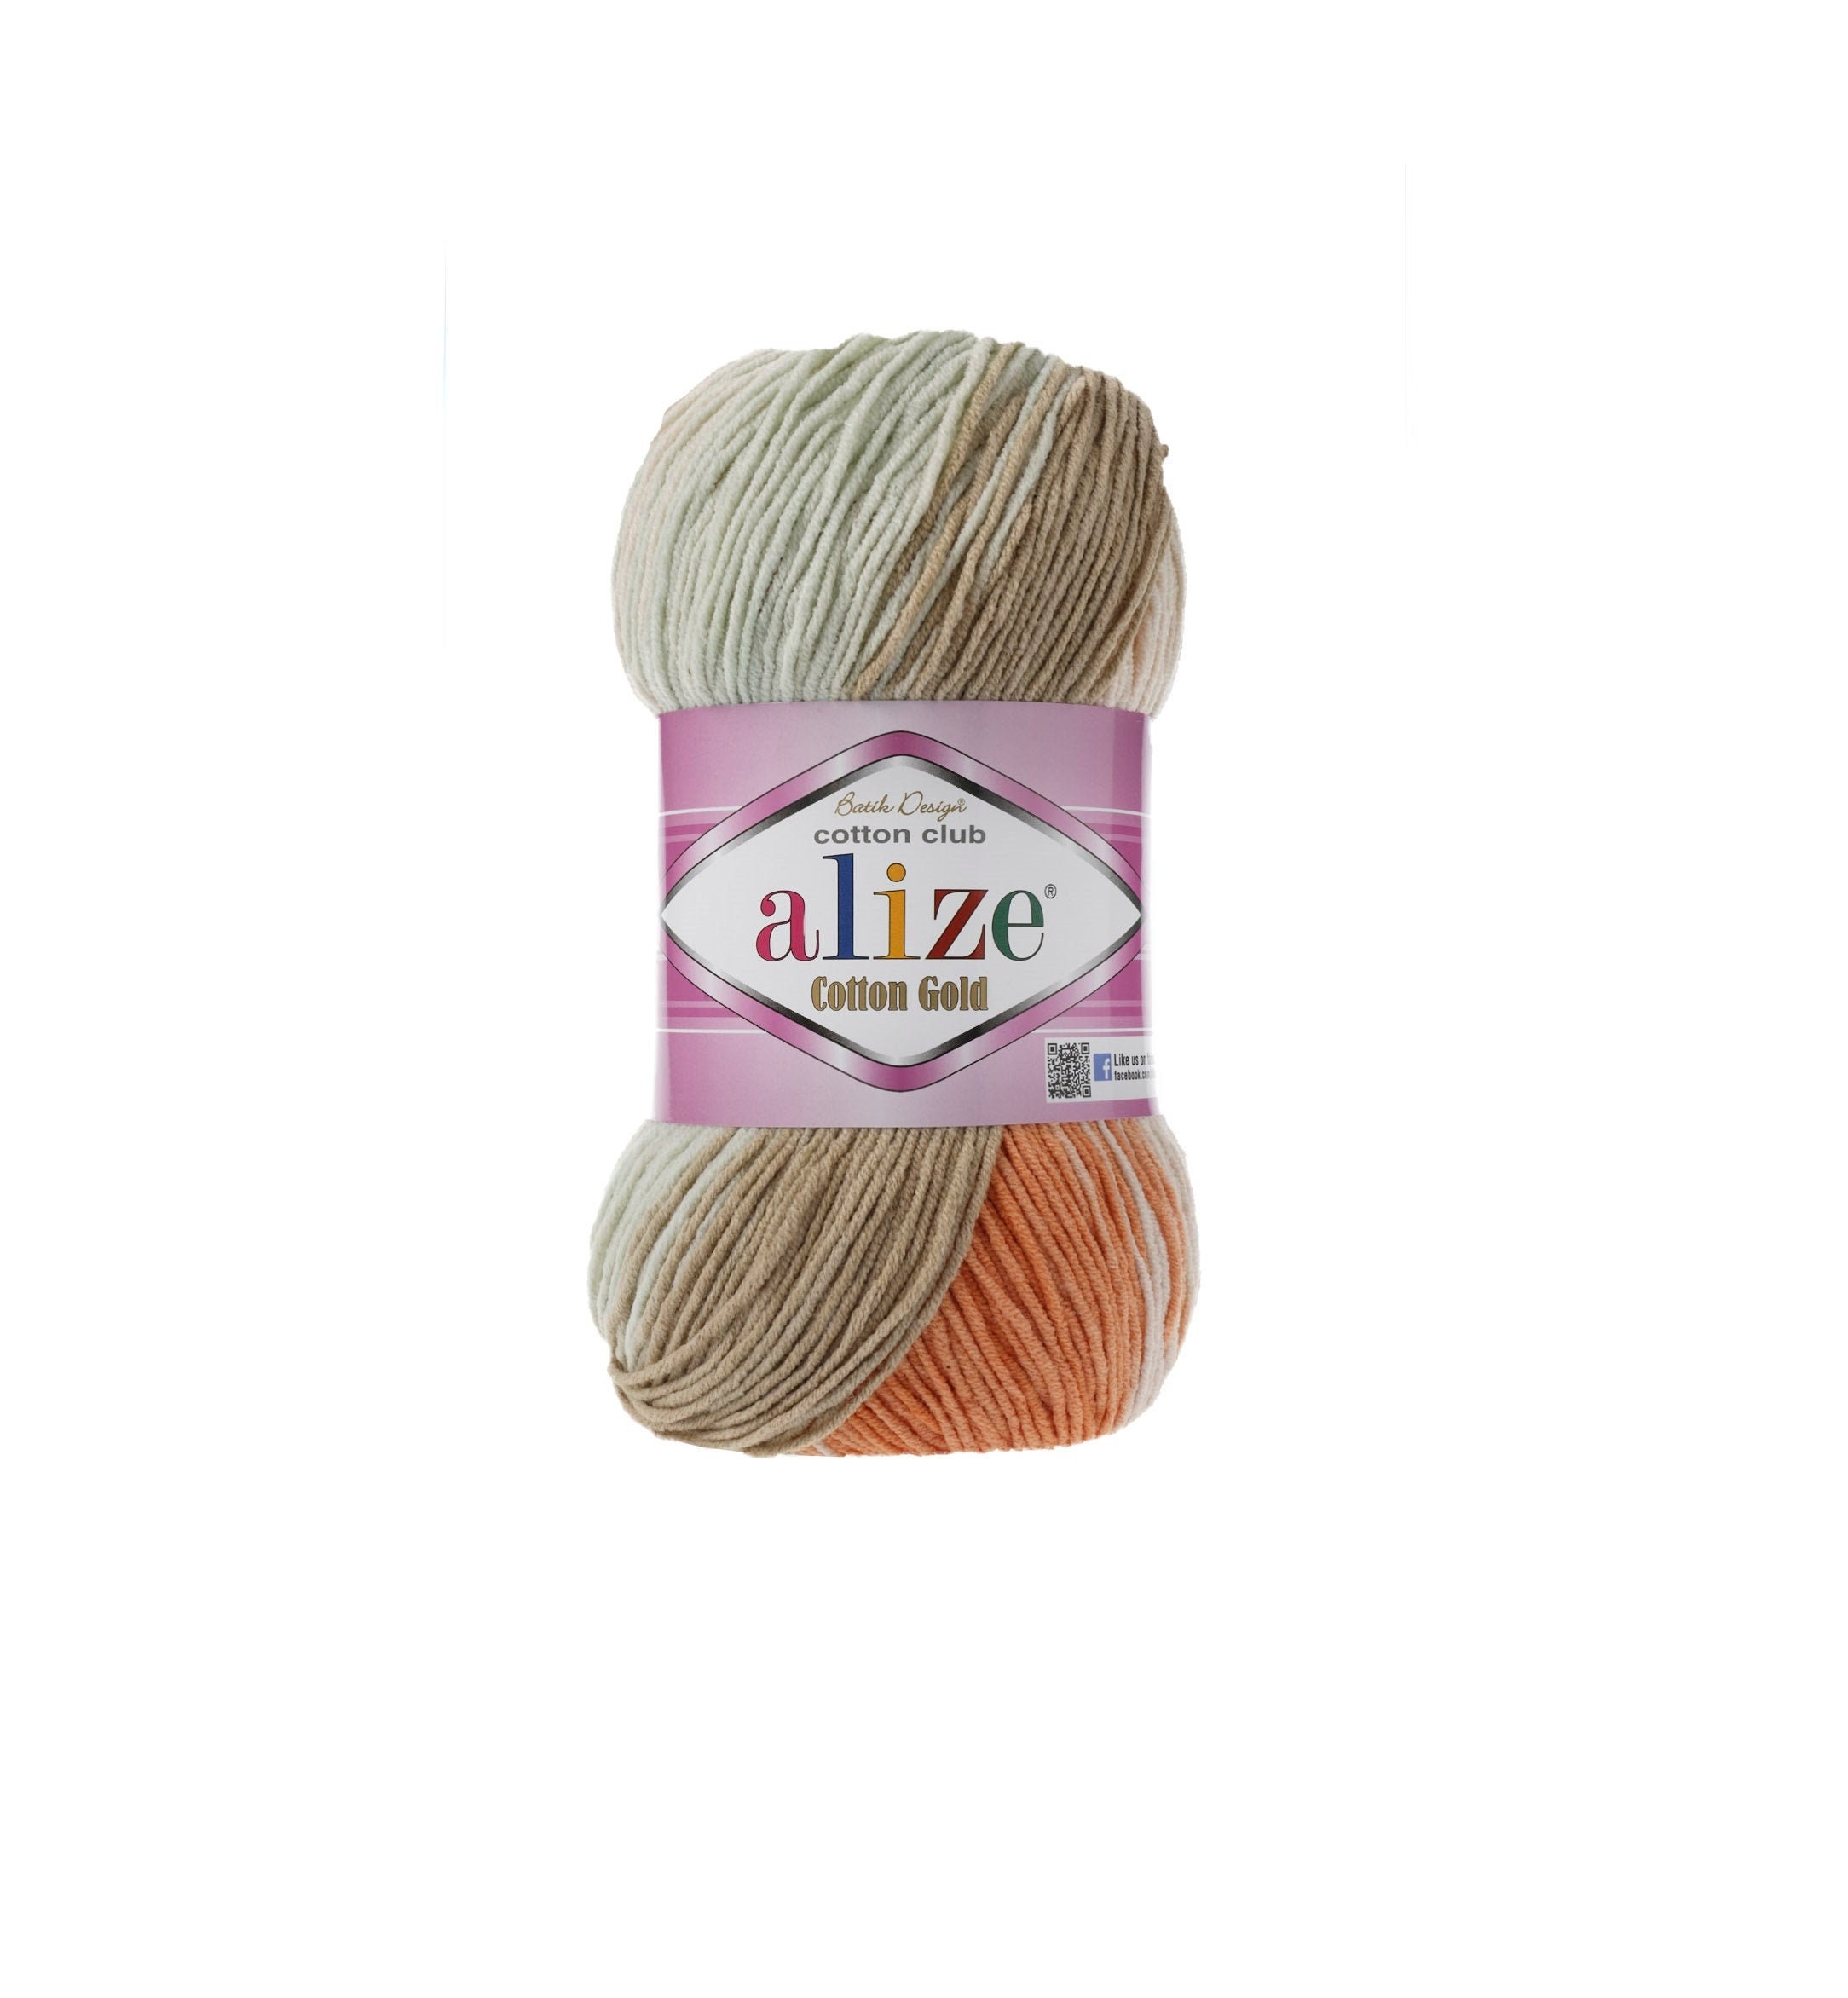 Alize Cotton Gold Batik, Knitting Yarn, Crochet Yarn, Soft Yarn